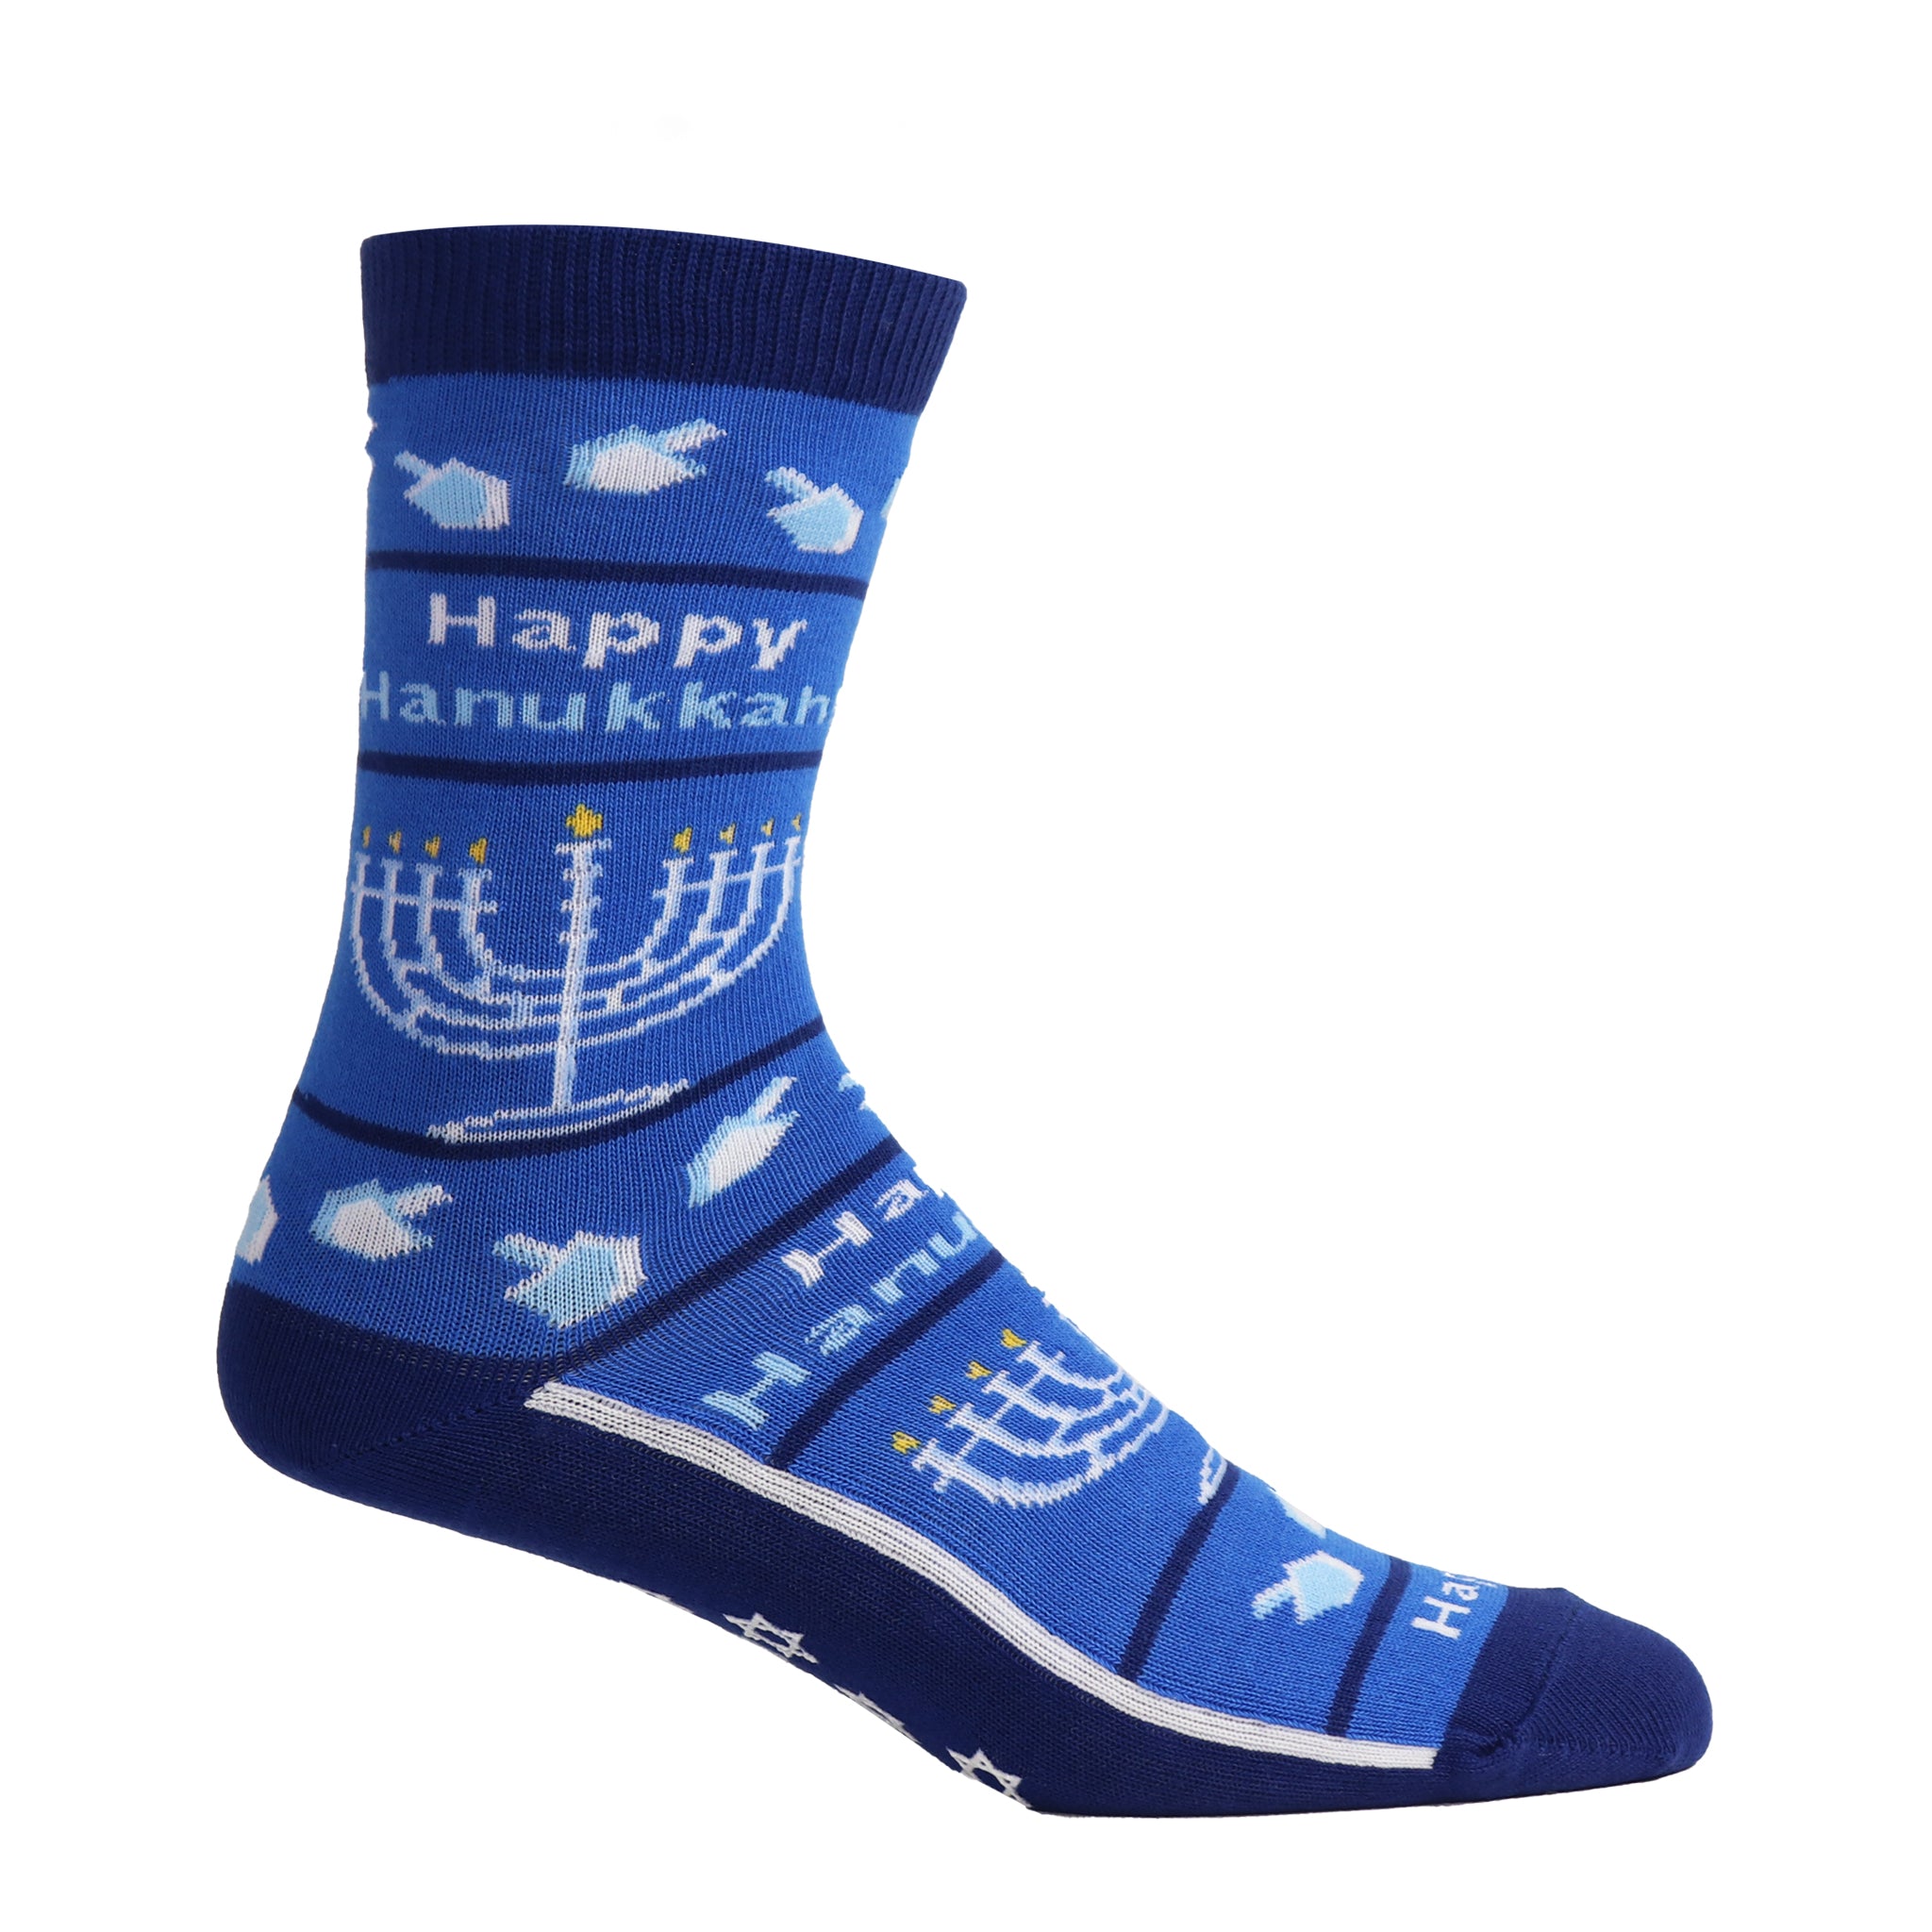 Happy Hanukah Christmas Kids Socks